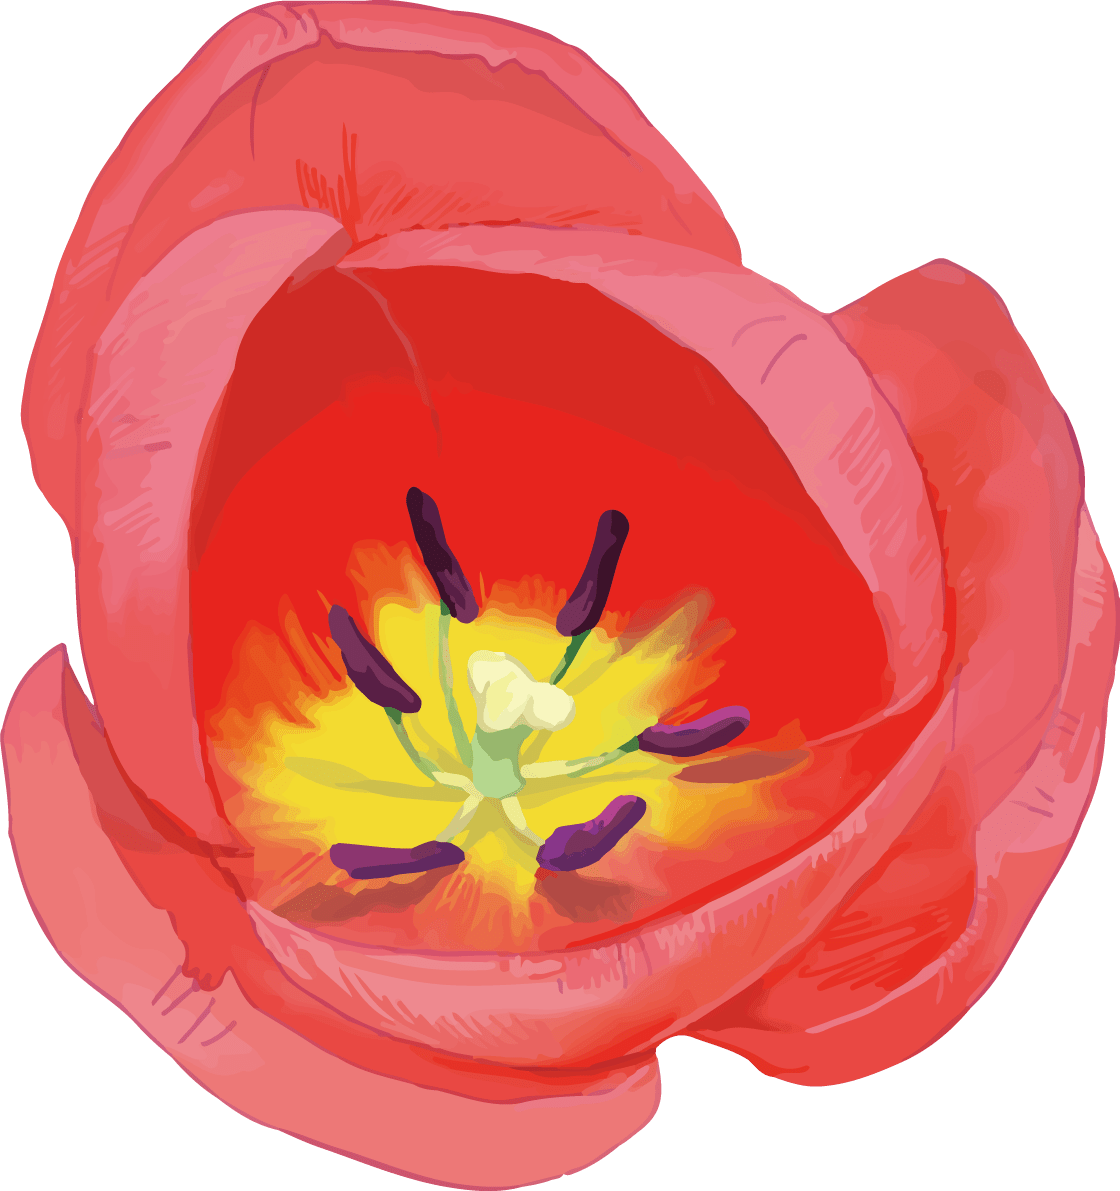 リアル綺麗チューリップイラスト 赤い花の拡大雌しべと雄しべ イラスト素材 超多くの無料かわいいイラスト素材